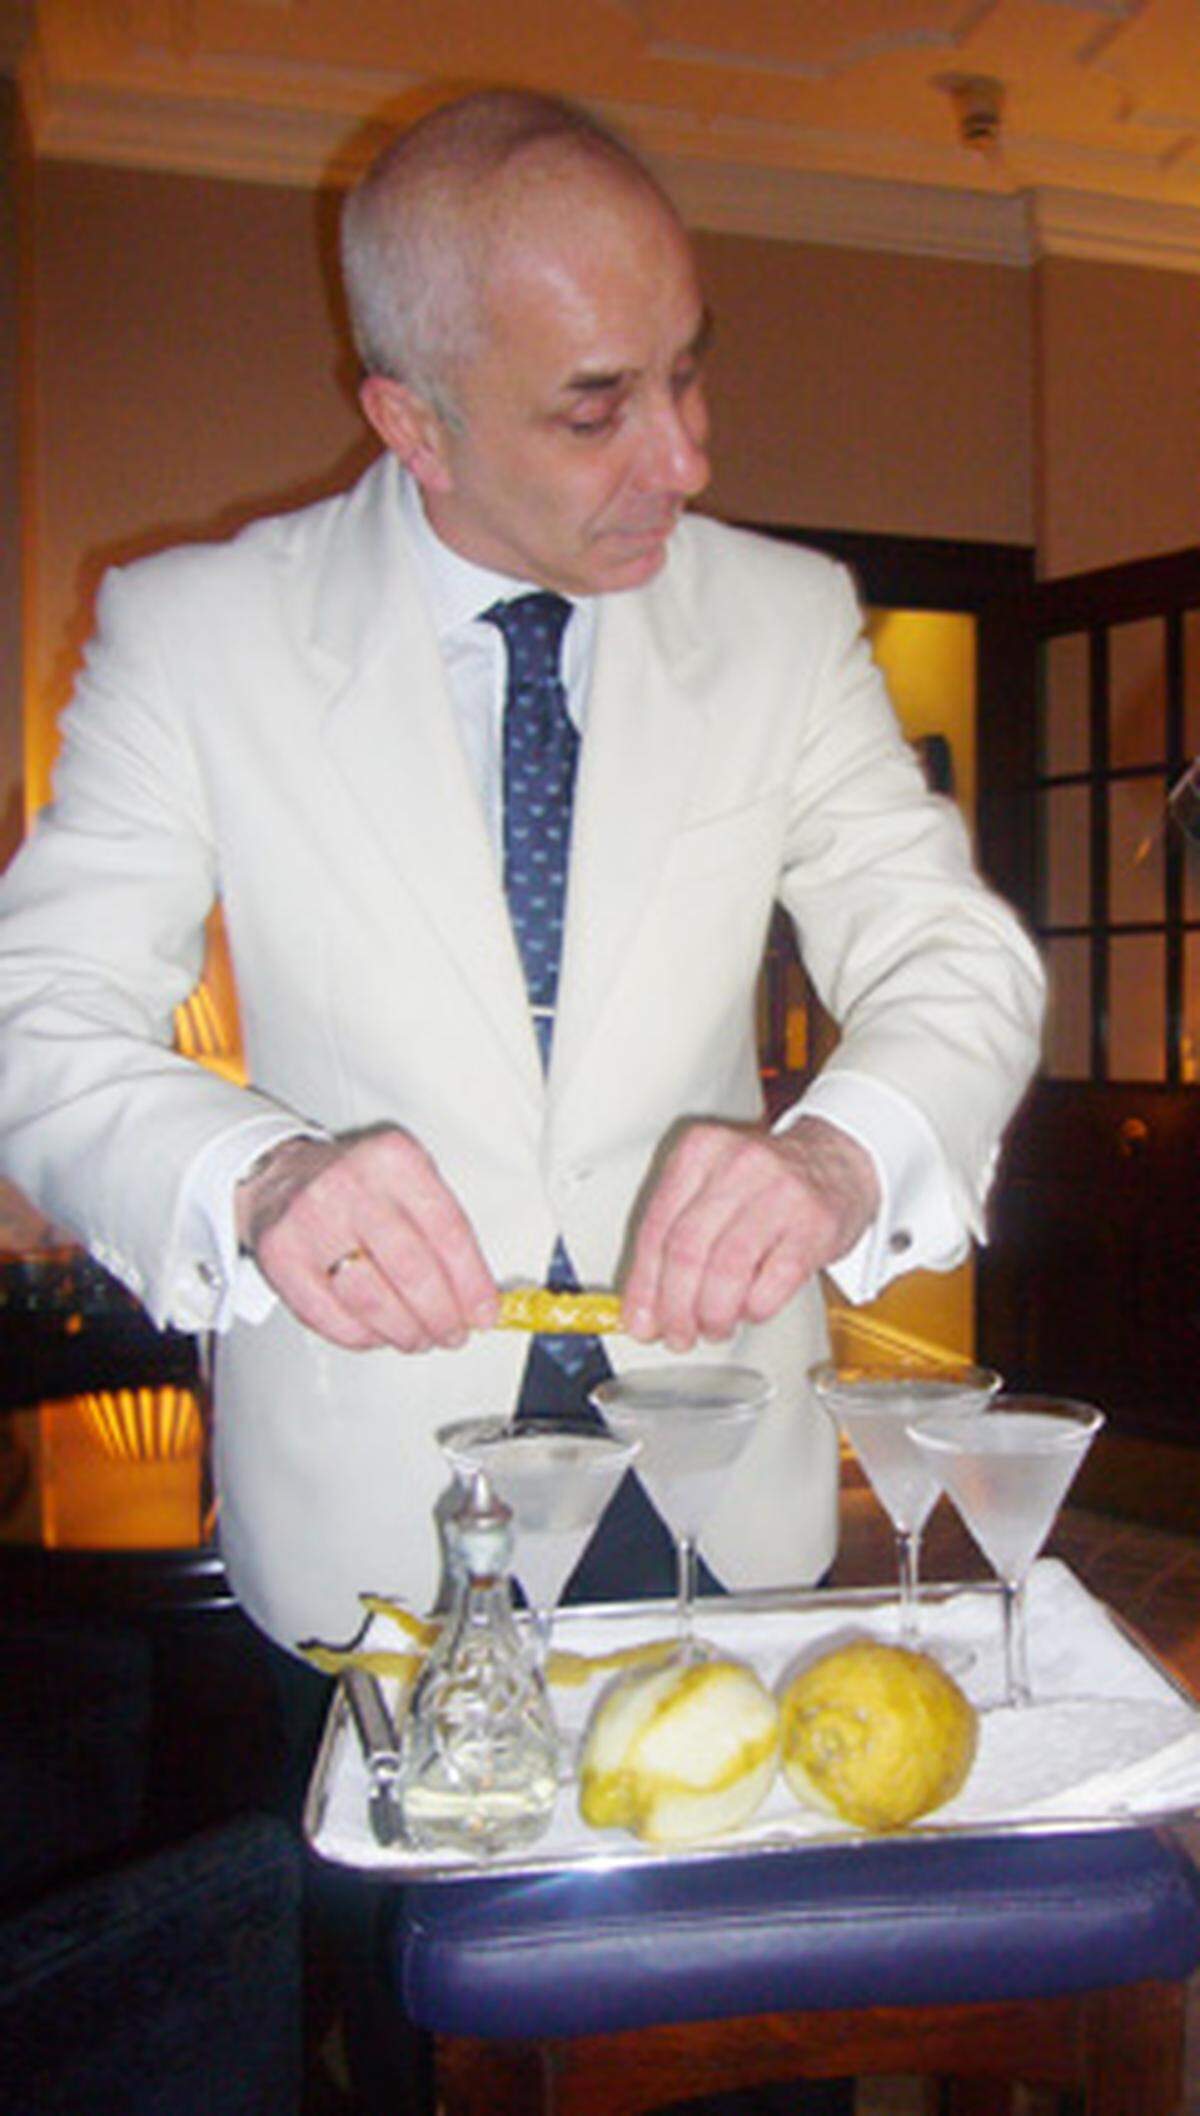 Schritt sieben: Die Zitroneschale über das Cocktailgals geben und ausdrücken. Der Saft der Schale mit den damit verbundenen ätherischen Ölen soll ins volle Martiniglas tropfen.